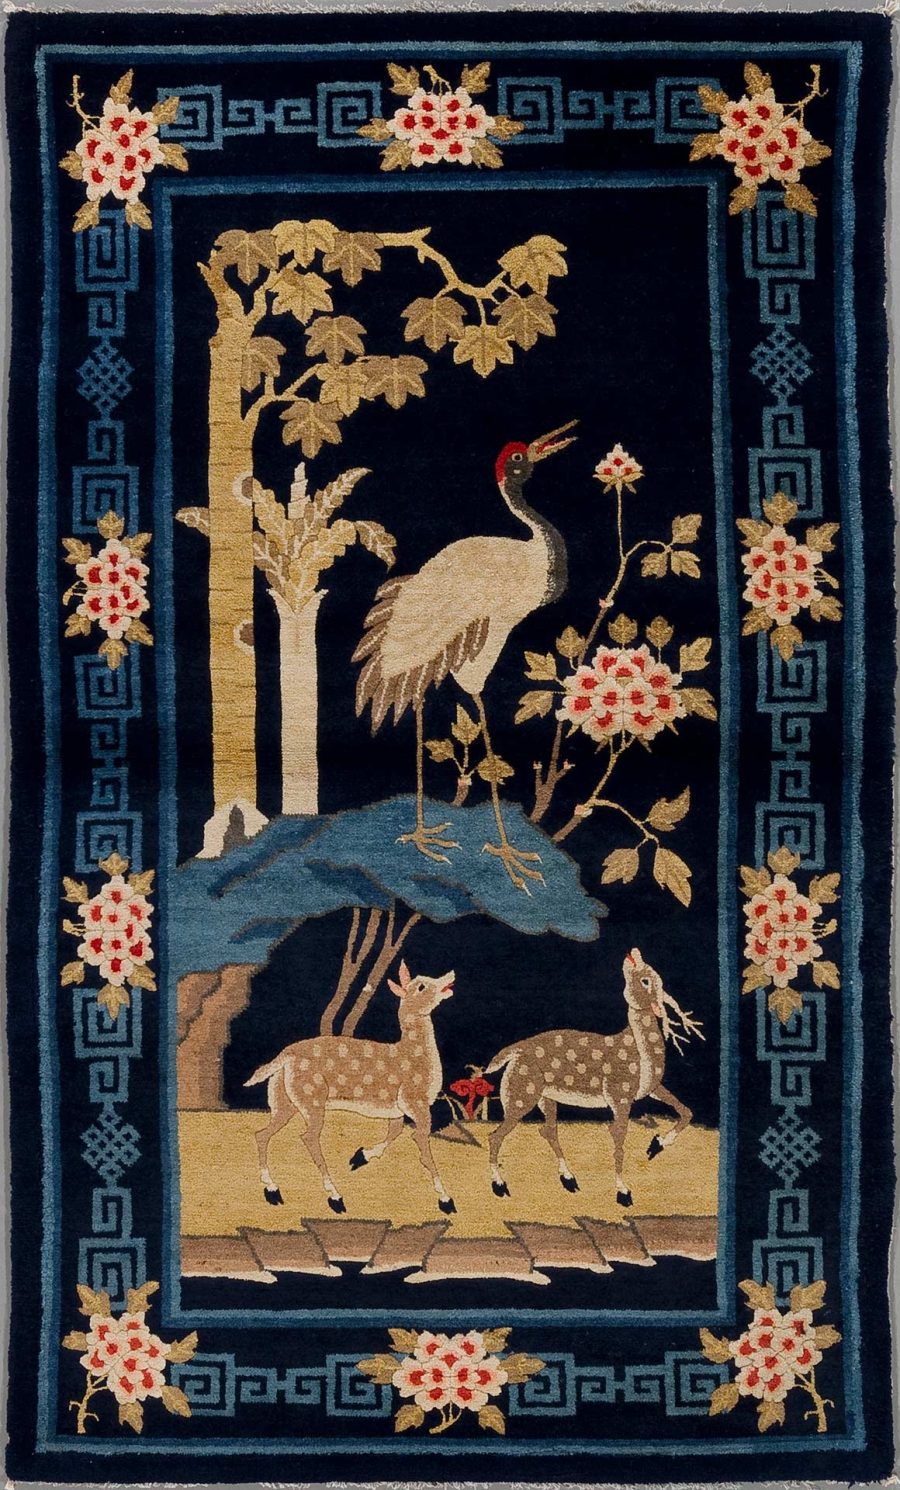 Ein detailliertes, handgearbeitetes Wandteppich mit asiatischen Motiven auf schwarzem Grund, darstellend einen großen Kranich neben einem Teich unter blühenden Bäumen und zwei Rehe auf einer Wiese, umrahmt von einem dekorativen Muster mit griechischem Schlüssel und floralem Design in den Farben Gold, Rot und Blau.